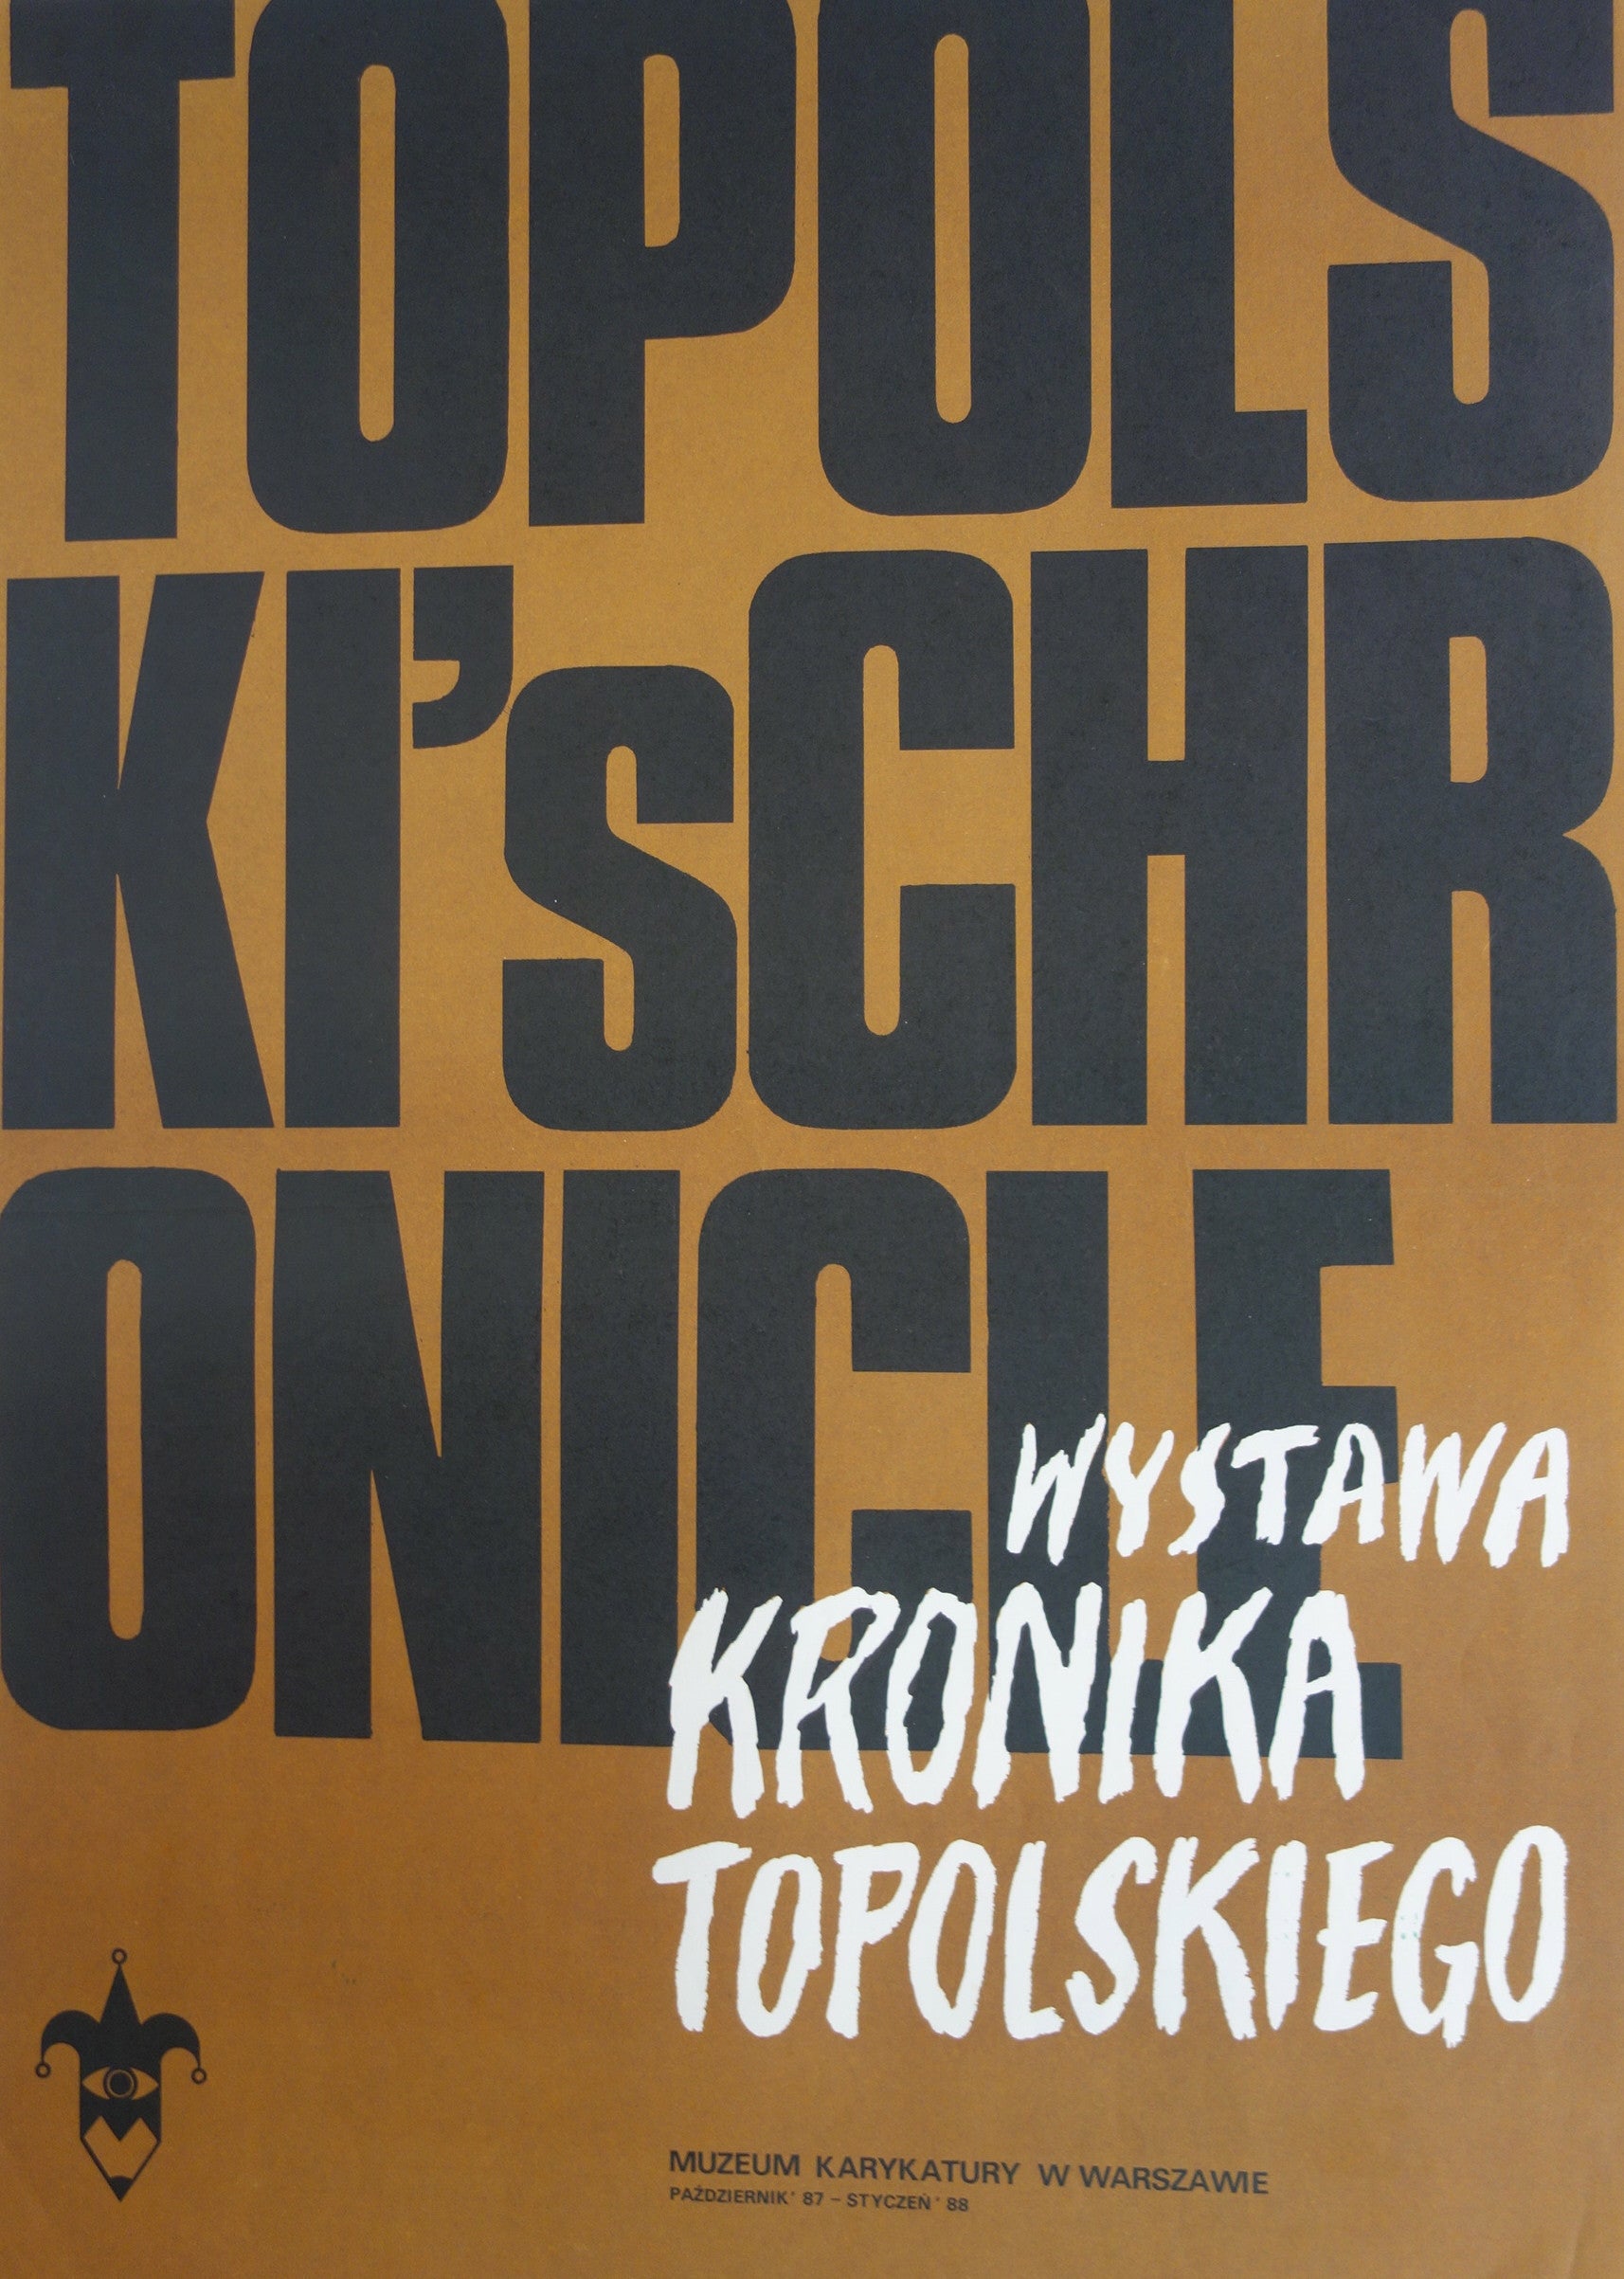 Topolski's Chronicle